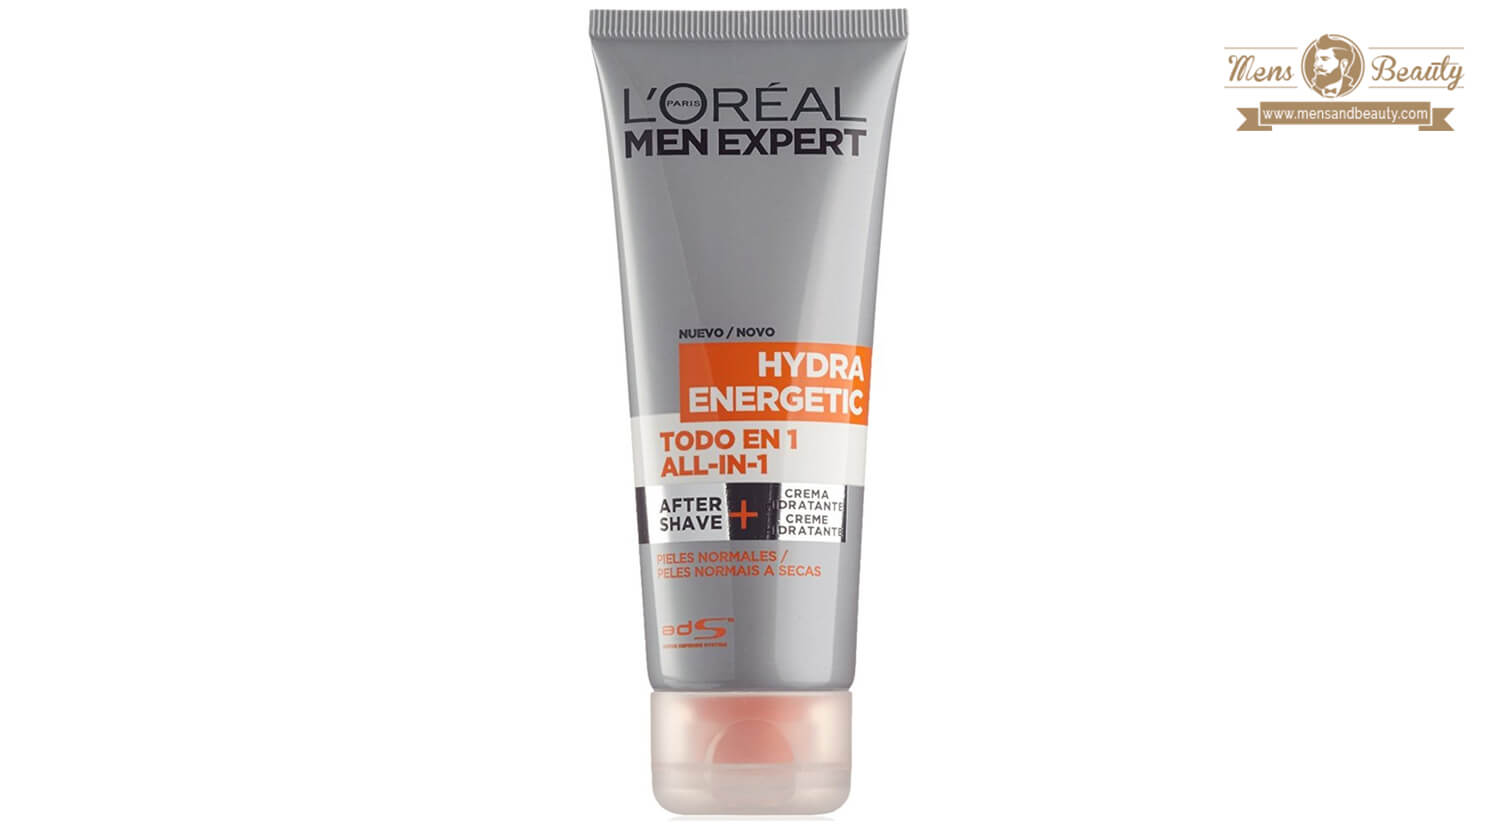 mejores productos para hombre loreal men expert todo en 1 after shave hidratante hydra energetic 2